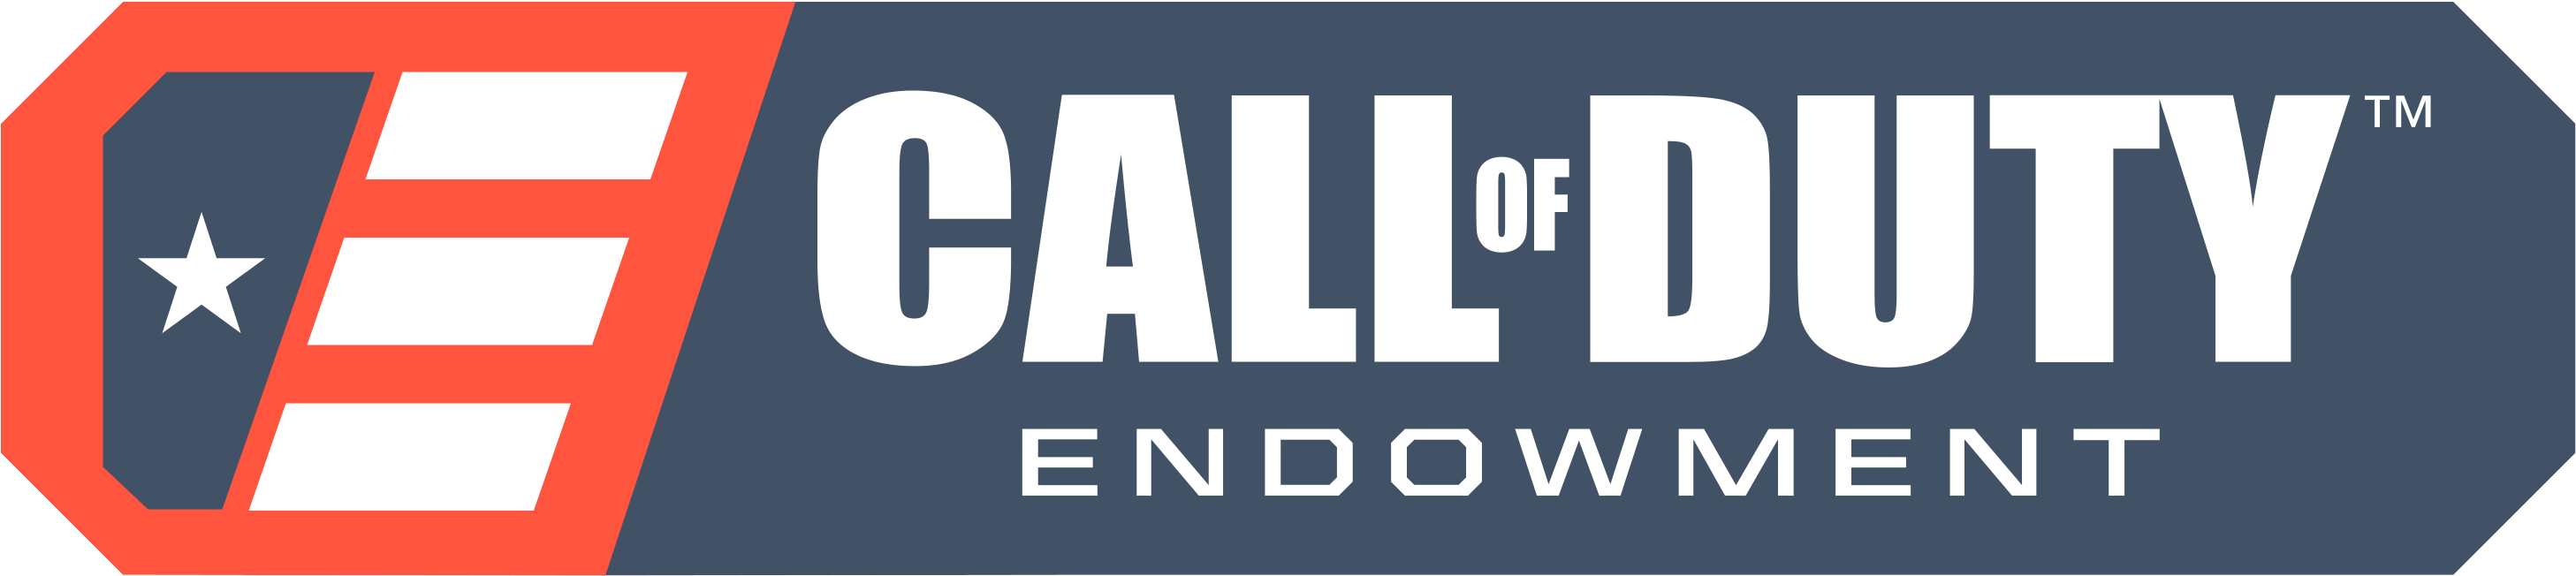 Callof Duty Endowment Logo PNG image